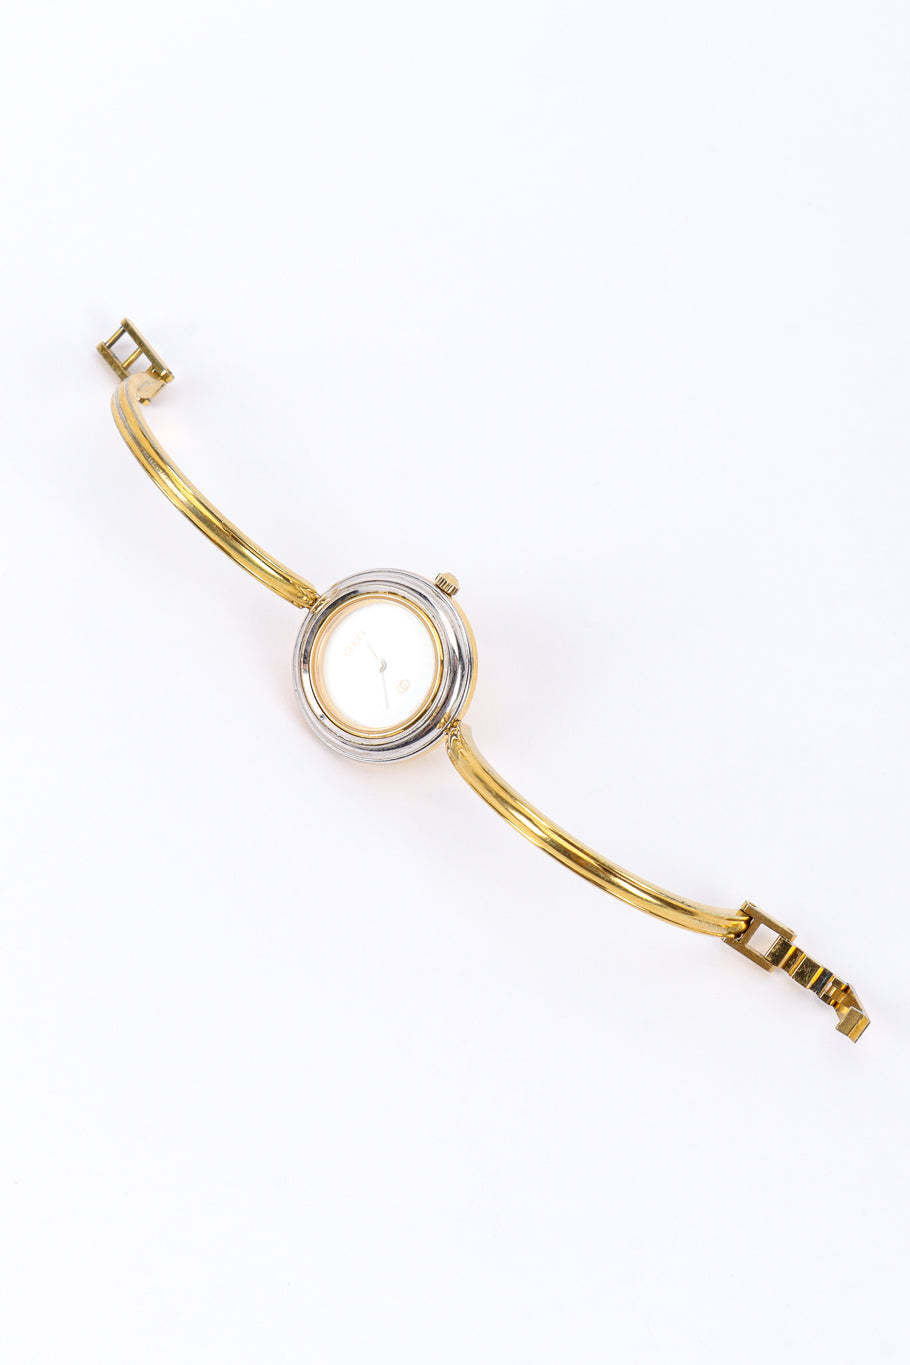 6 Bezel Bracelet Watch Boxed Set by Gucci watch open @recessla